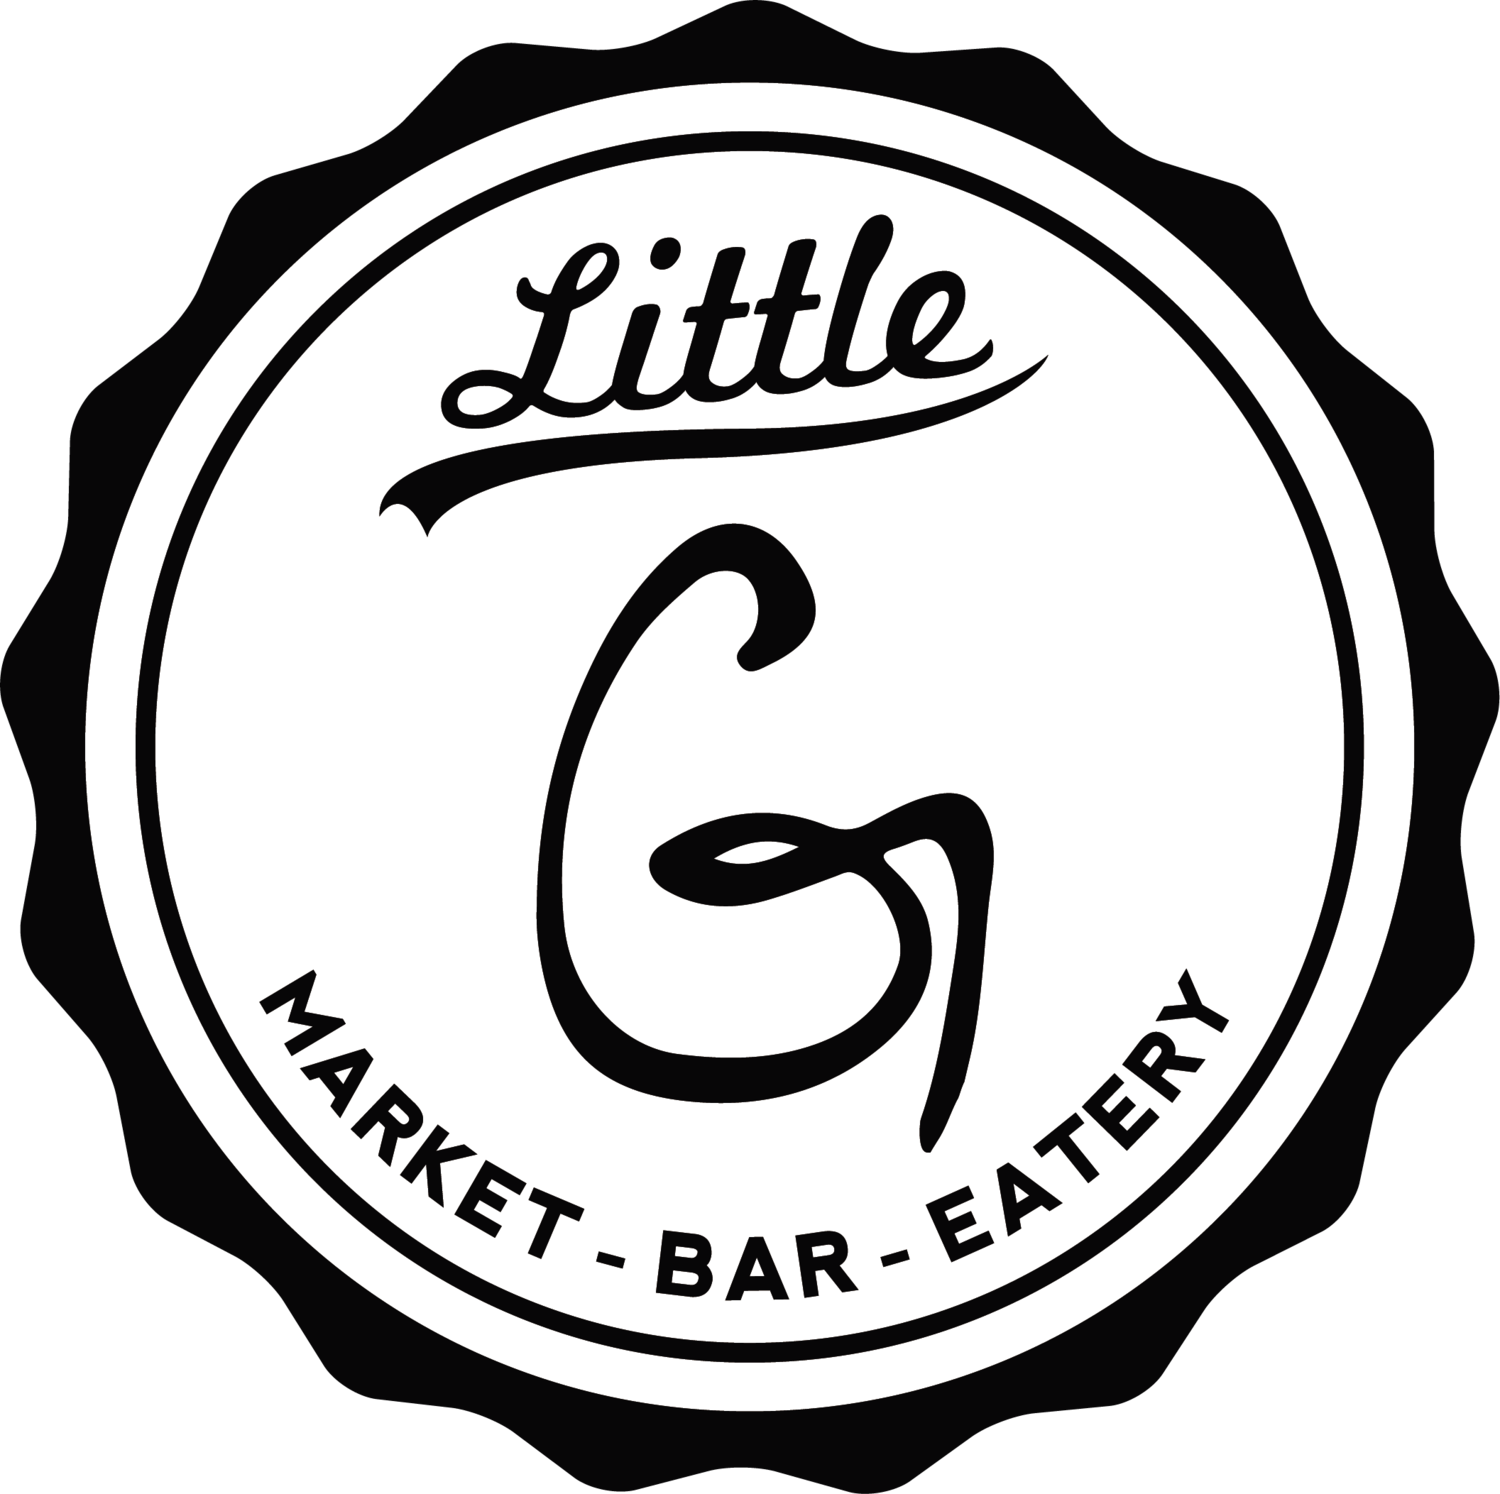 Little G Market • Bar • Eatery